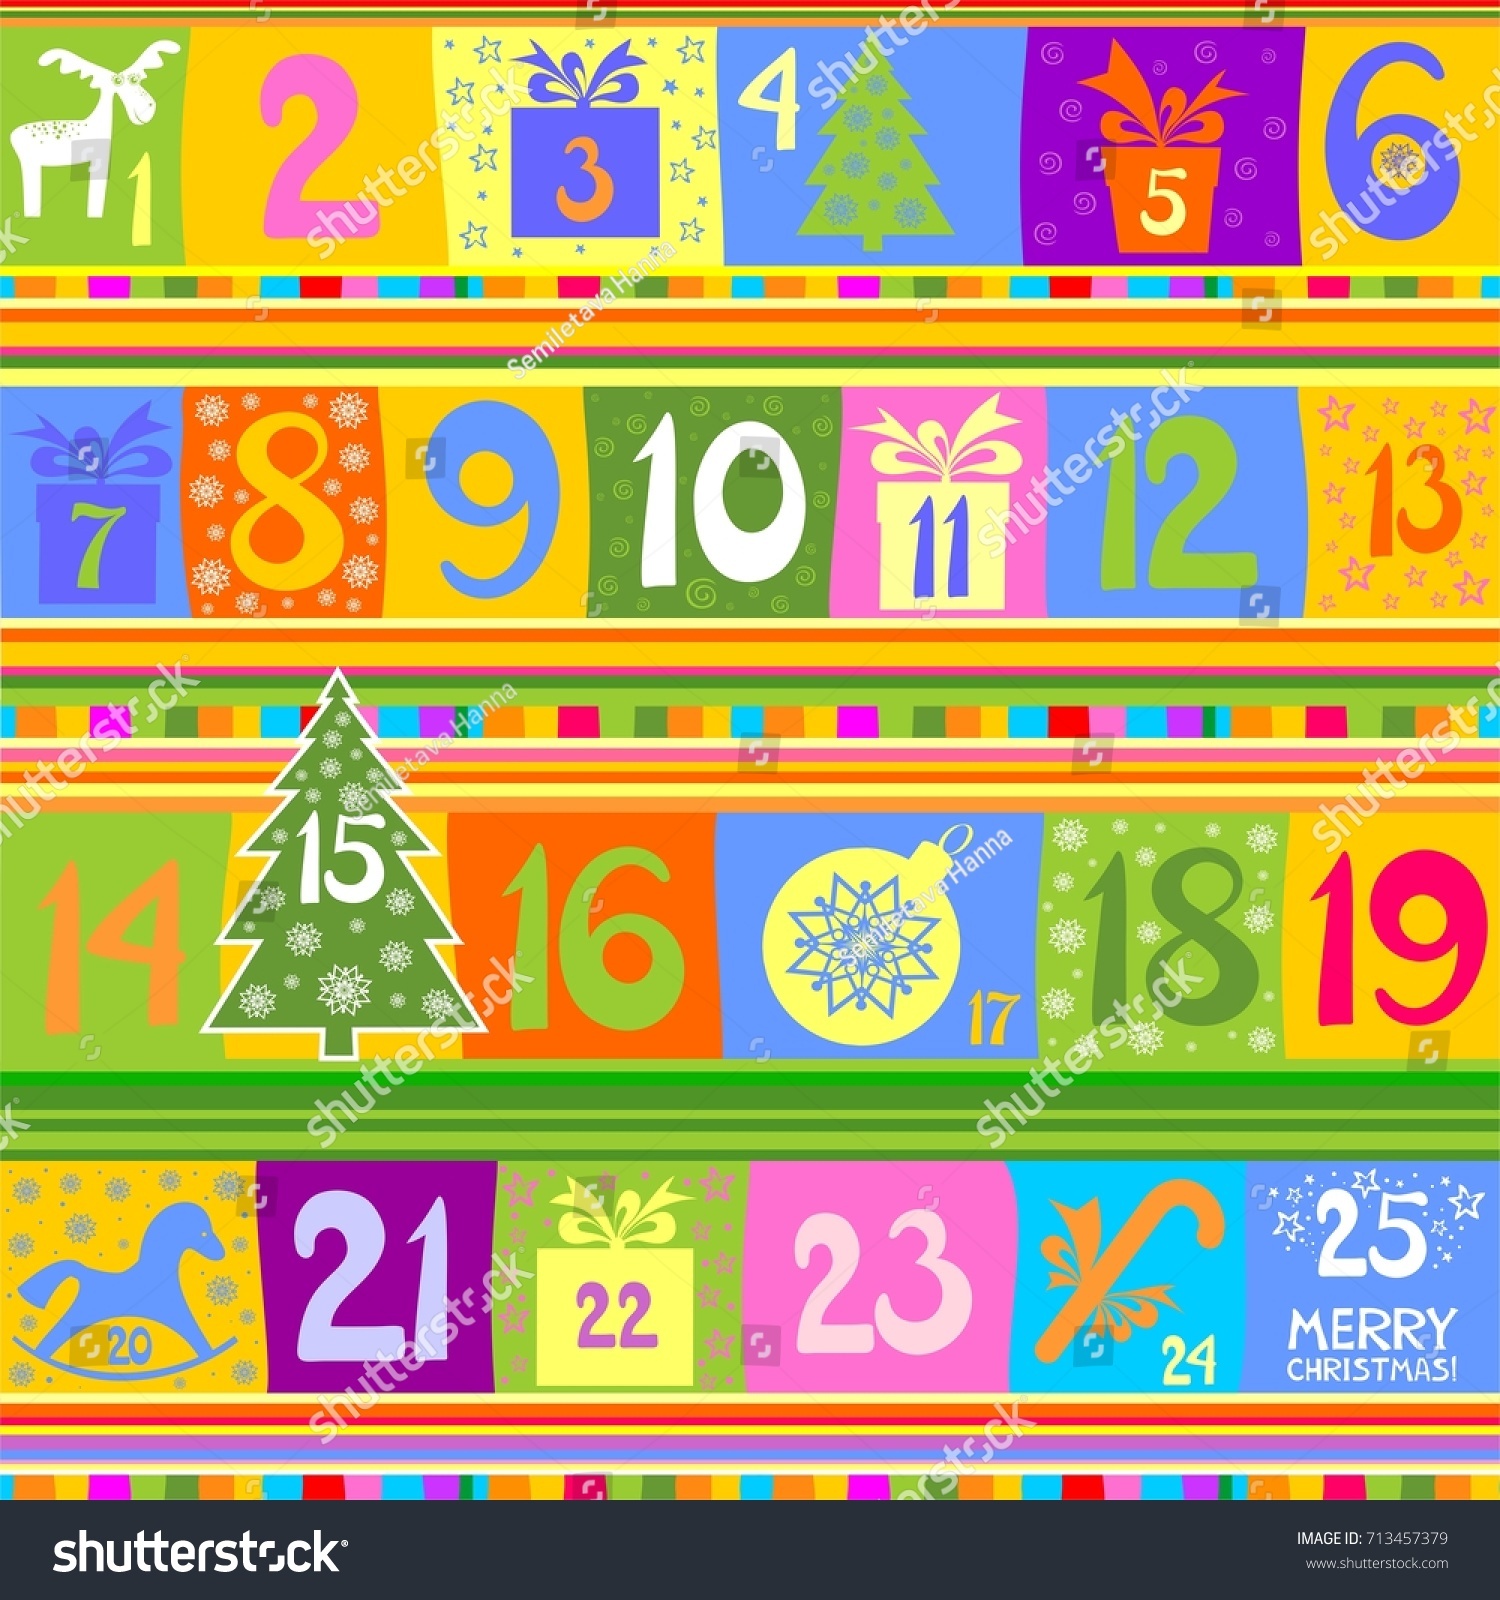 Windows Calendar Template from image.shutterstock.com